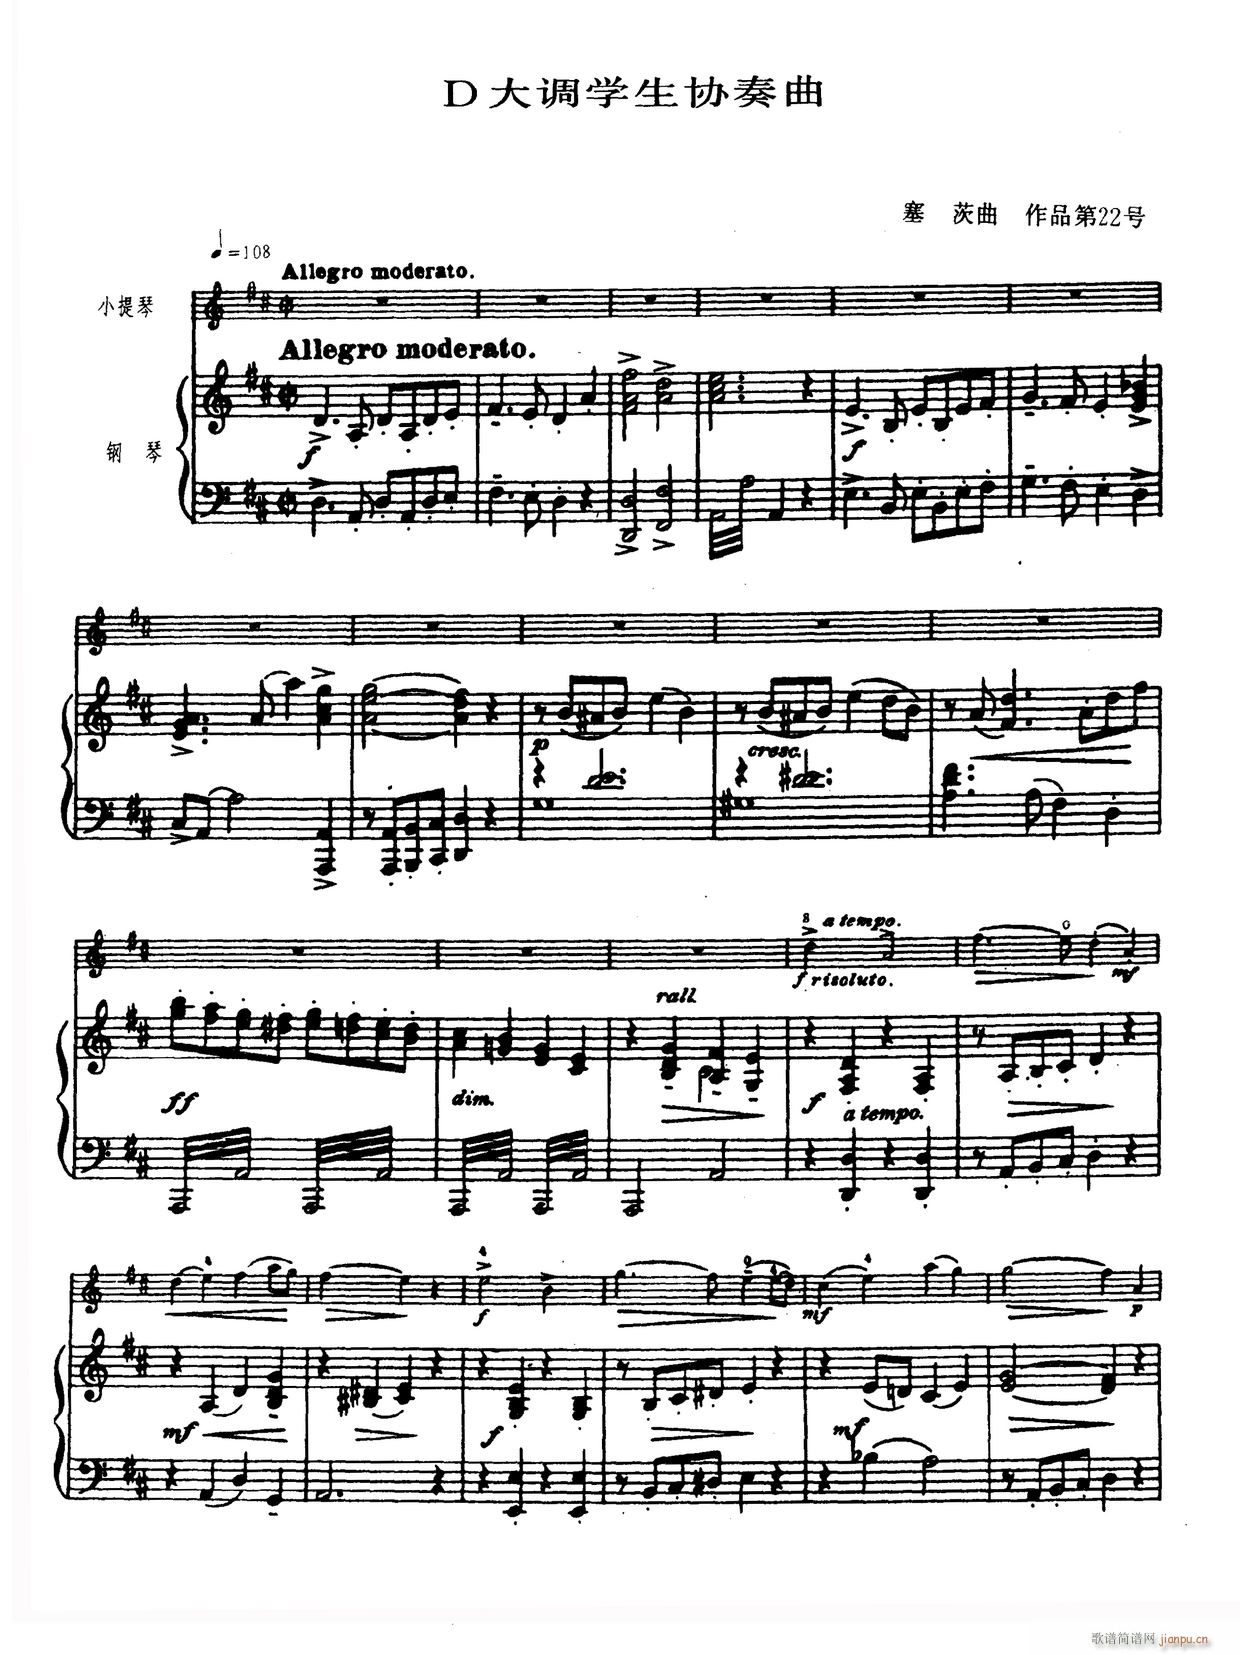 D大调学生协奏曲 塞茨作品第14号(小提琴谱)1